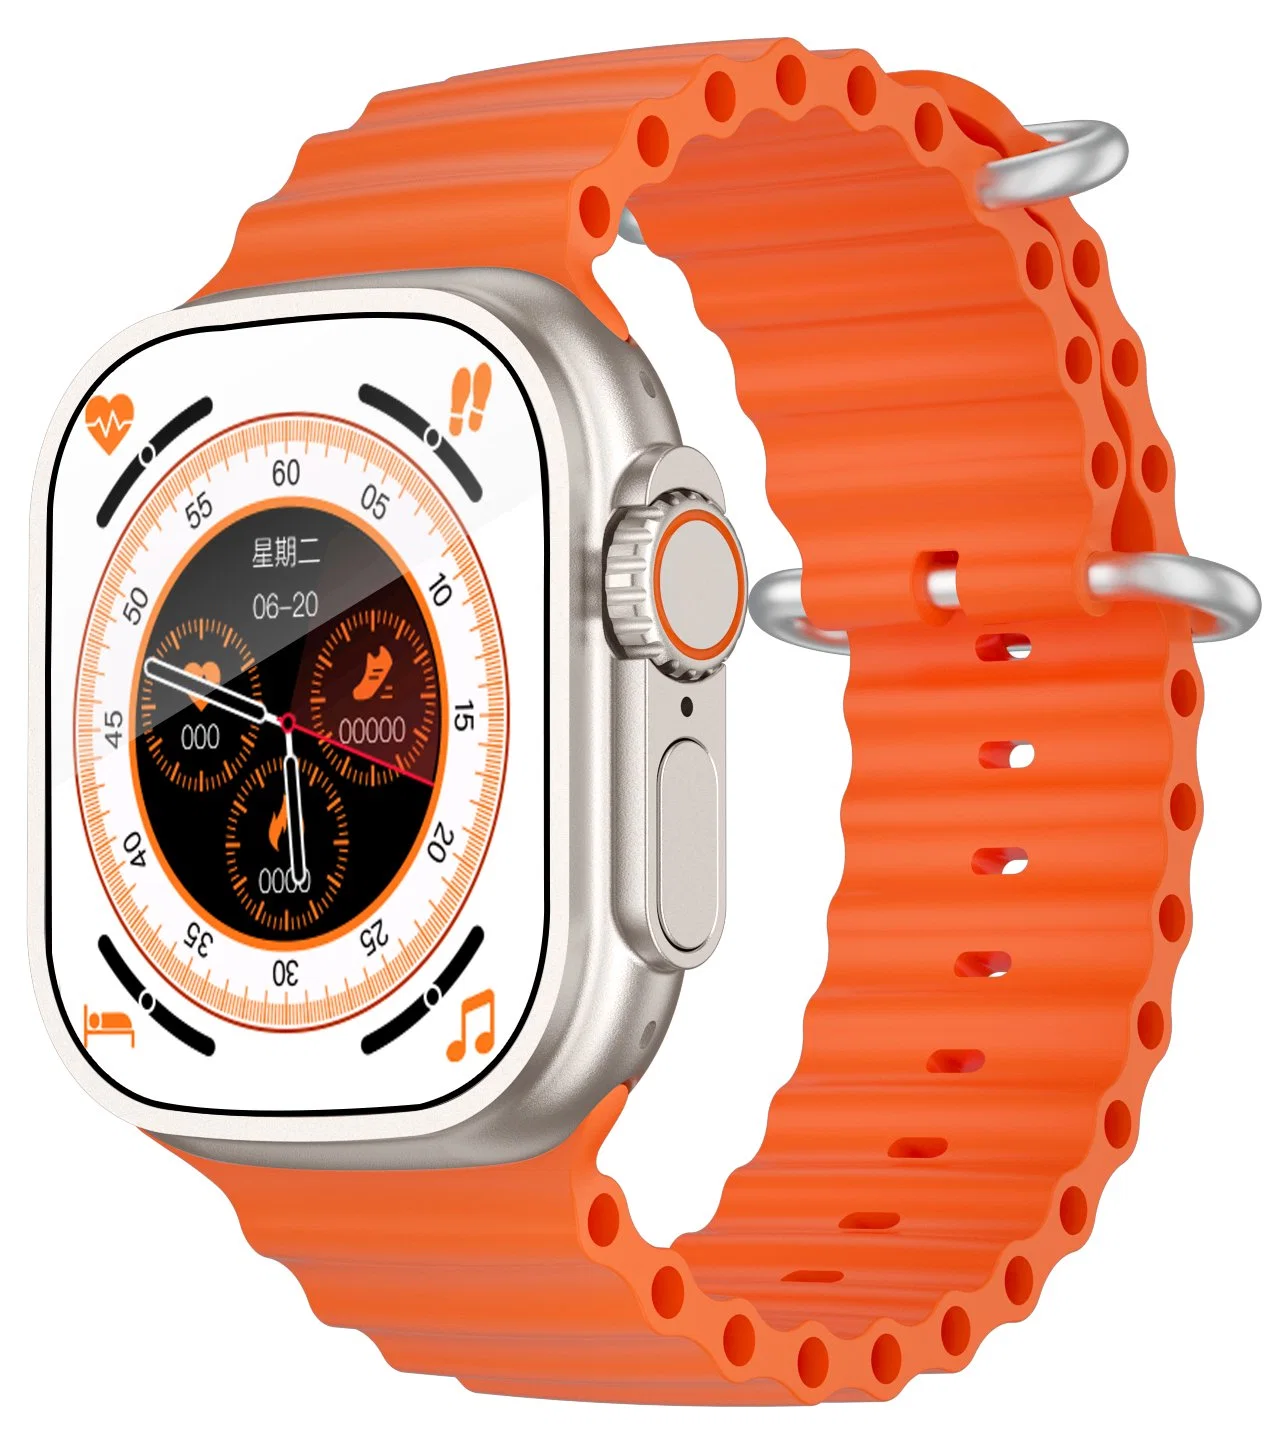 2023 ساعة ذكية Ultra 4G Watch S8 سعة 1 + 16 جيجابايت 1000 مللي أمبير/ساعة بطارية كبيرة WiFi GPS اتصال إنترنت هاتف Android Smart Watch GS29h GS29 Kg29h Kg29